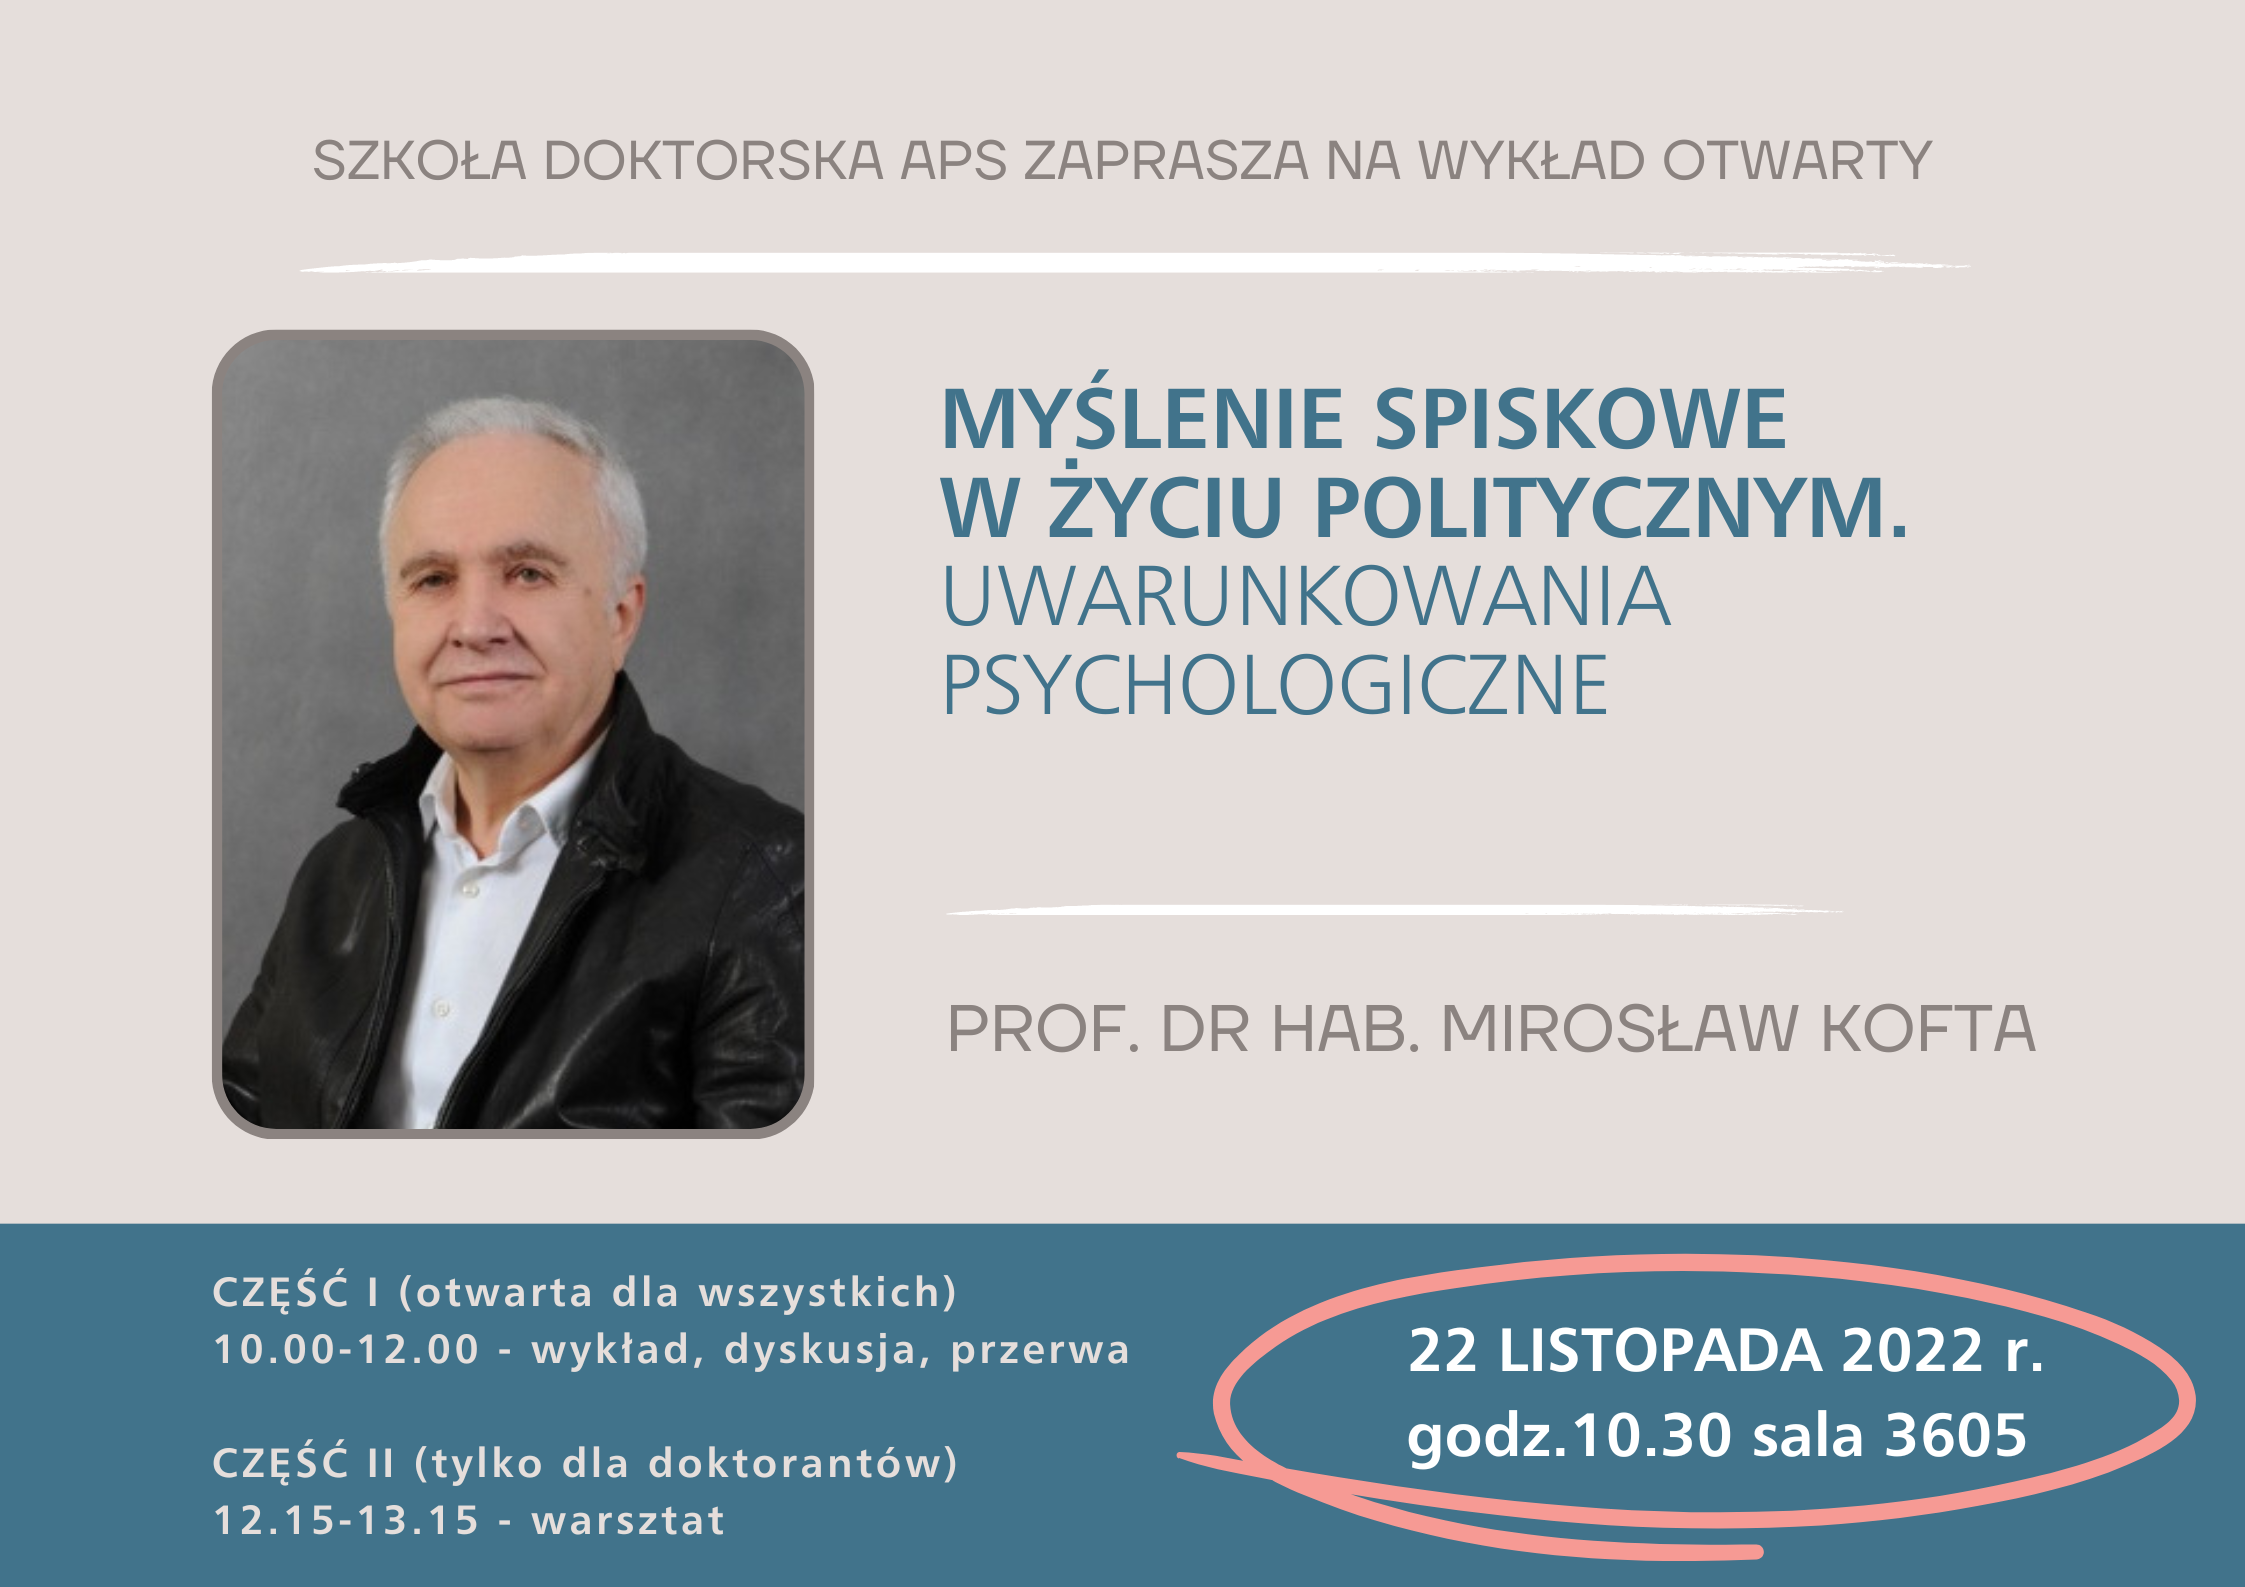 Plakat zapraszający na wykład otwarty prof. dra hab. Mirosława Kofty